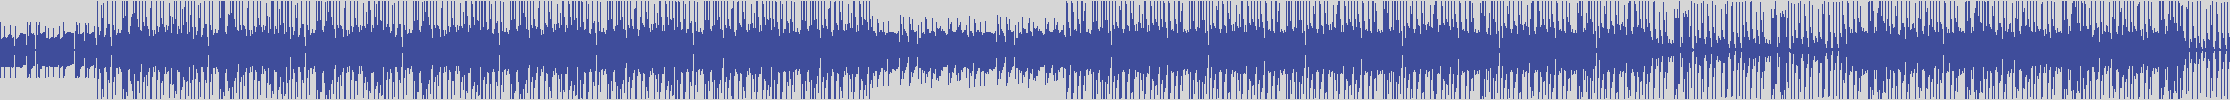 noclouds_chillout [NOC125] Slow Motion Cafe - Kirronex [Original Mix] audio wave form